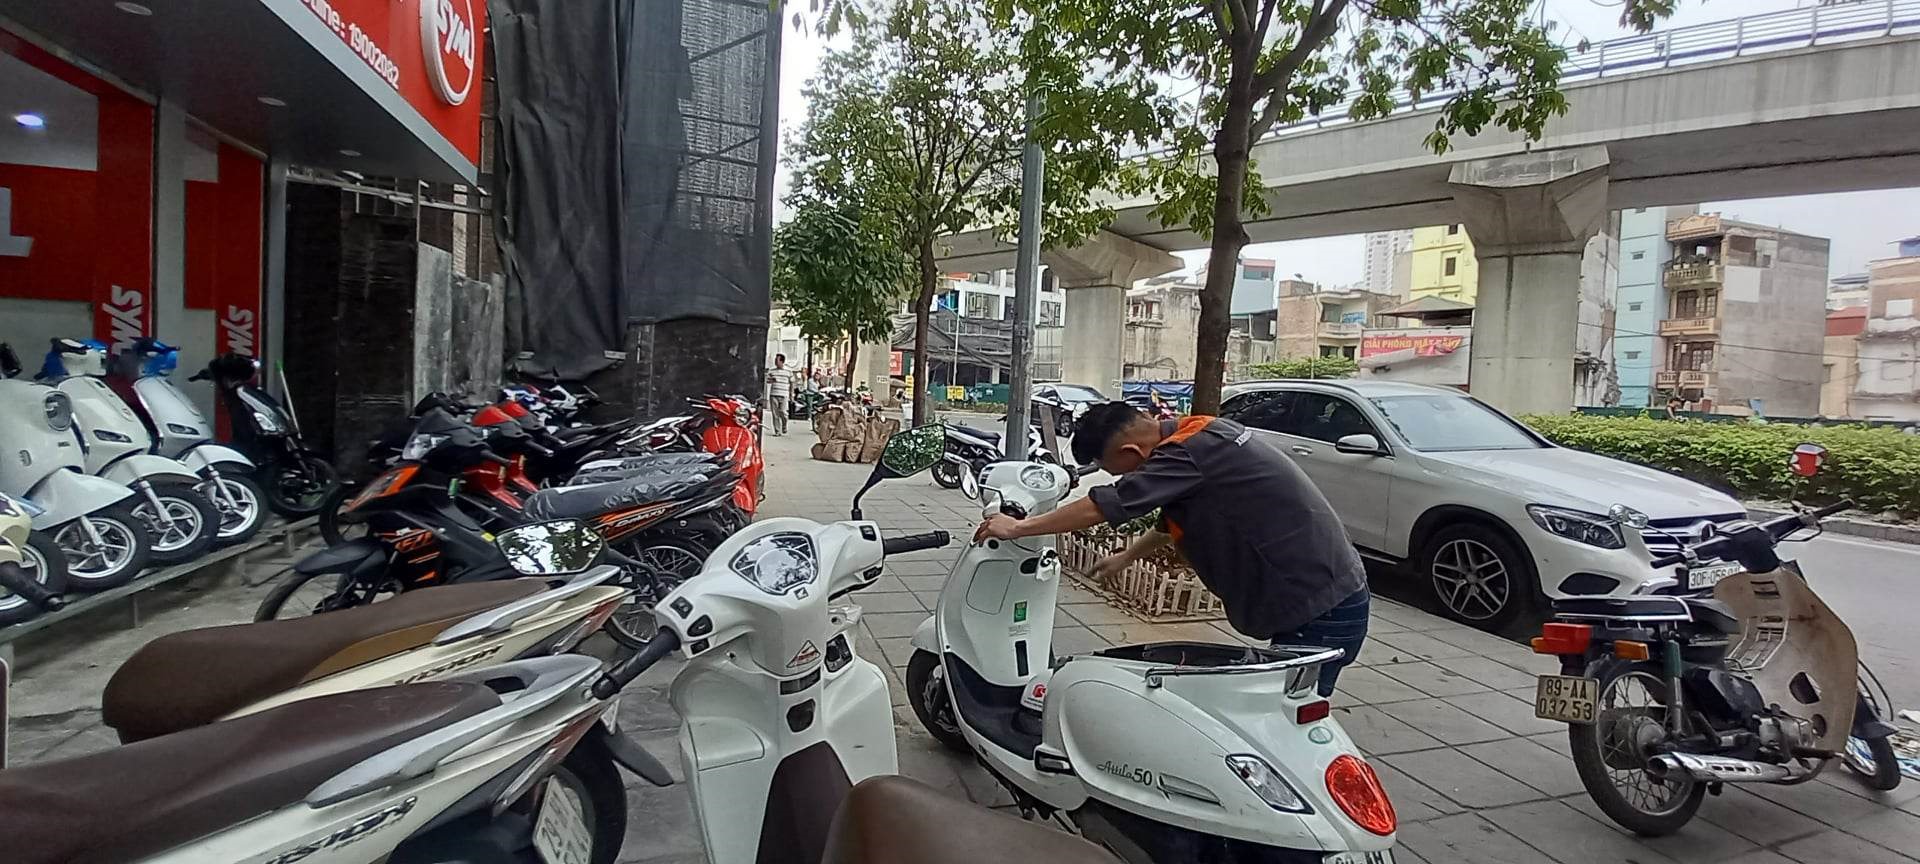 Cửa hàng chuyên bán xe máy 50cc tại quận Cầu Giấy, Hà Nội. Ảnh Xuyên Đông